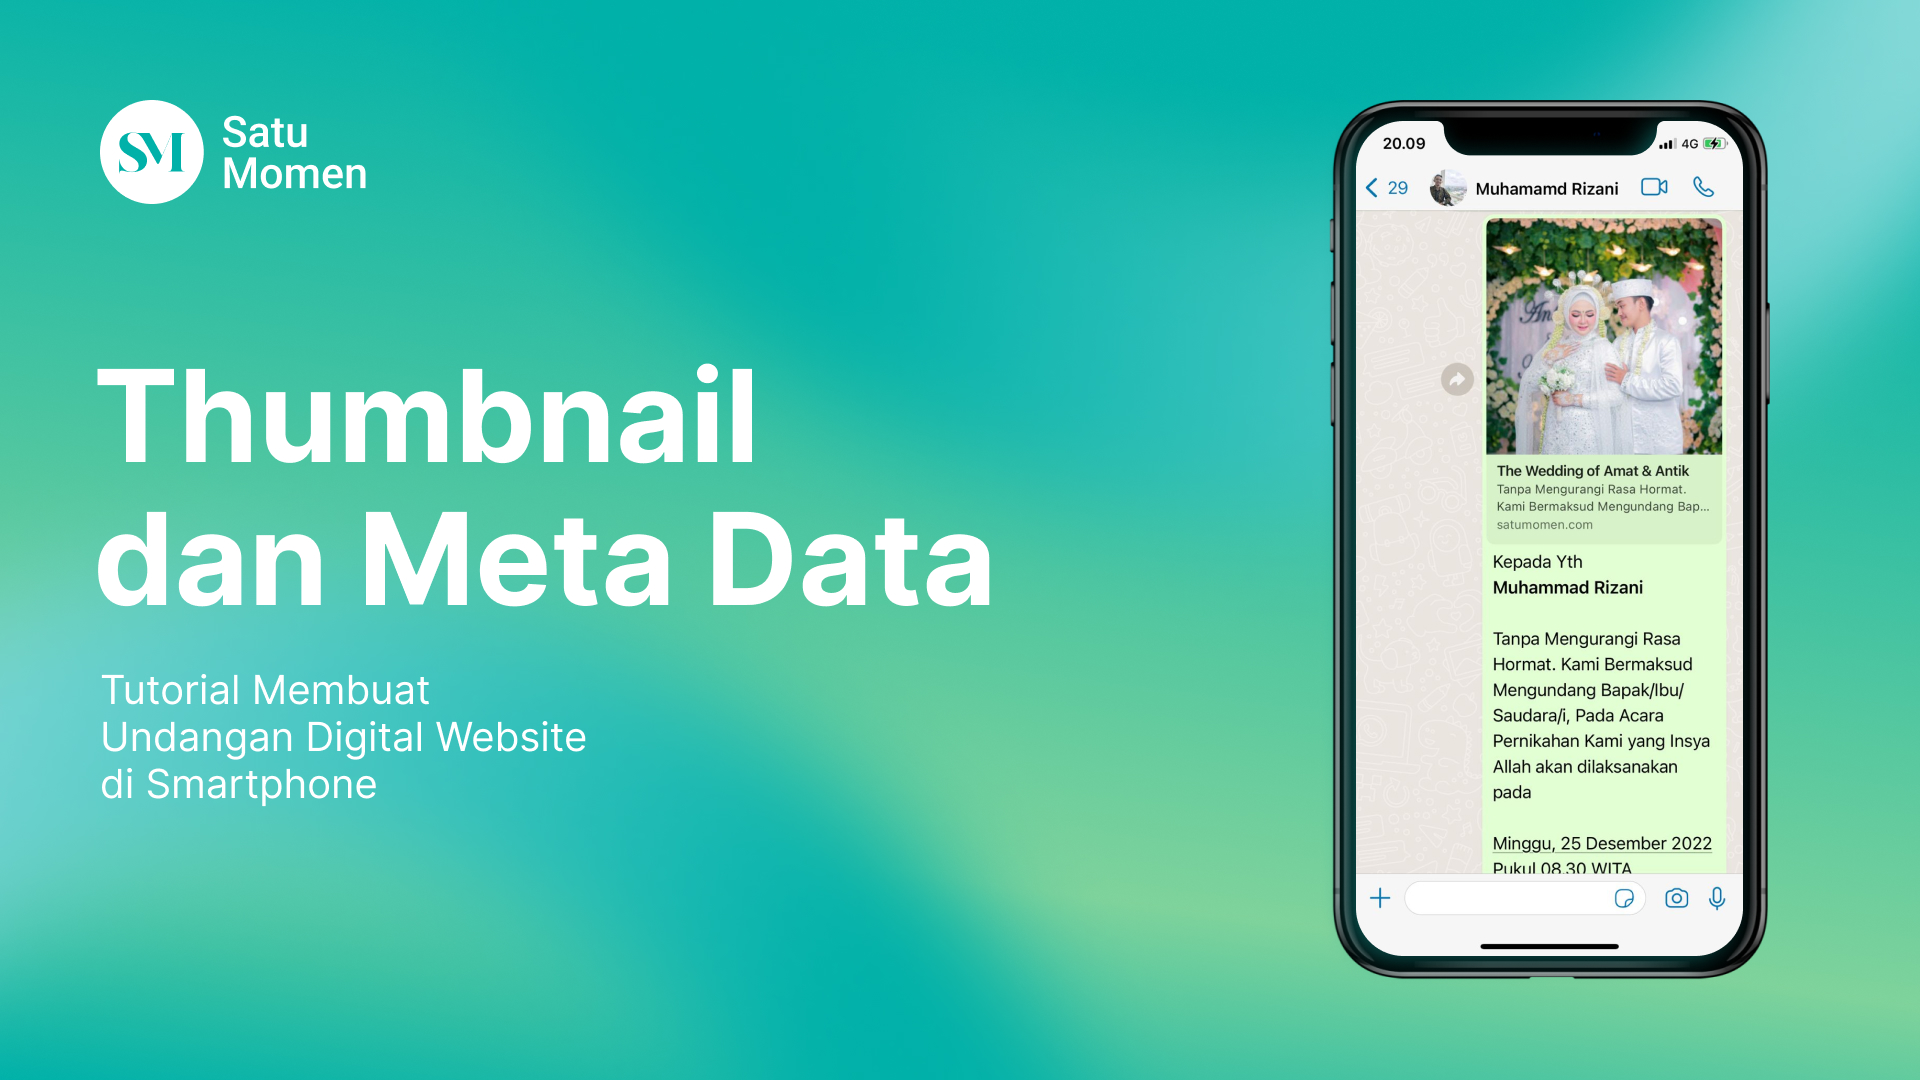 Thumbnail dan Meta Data